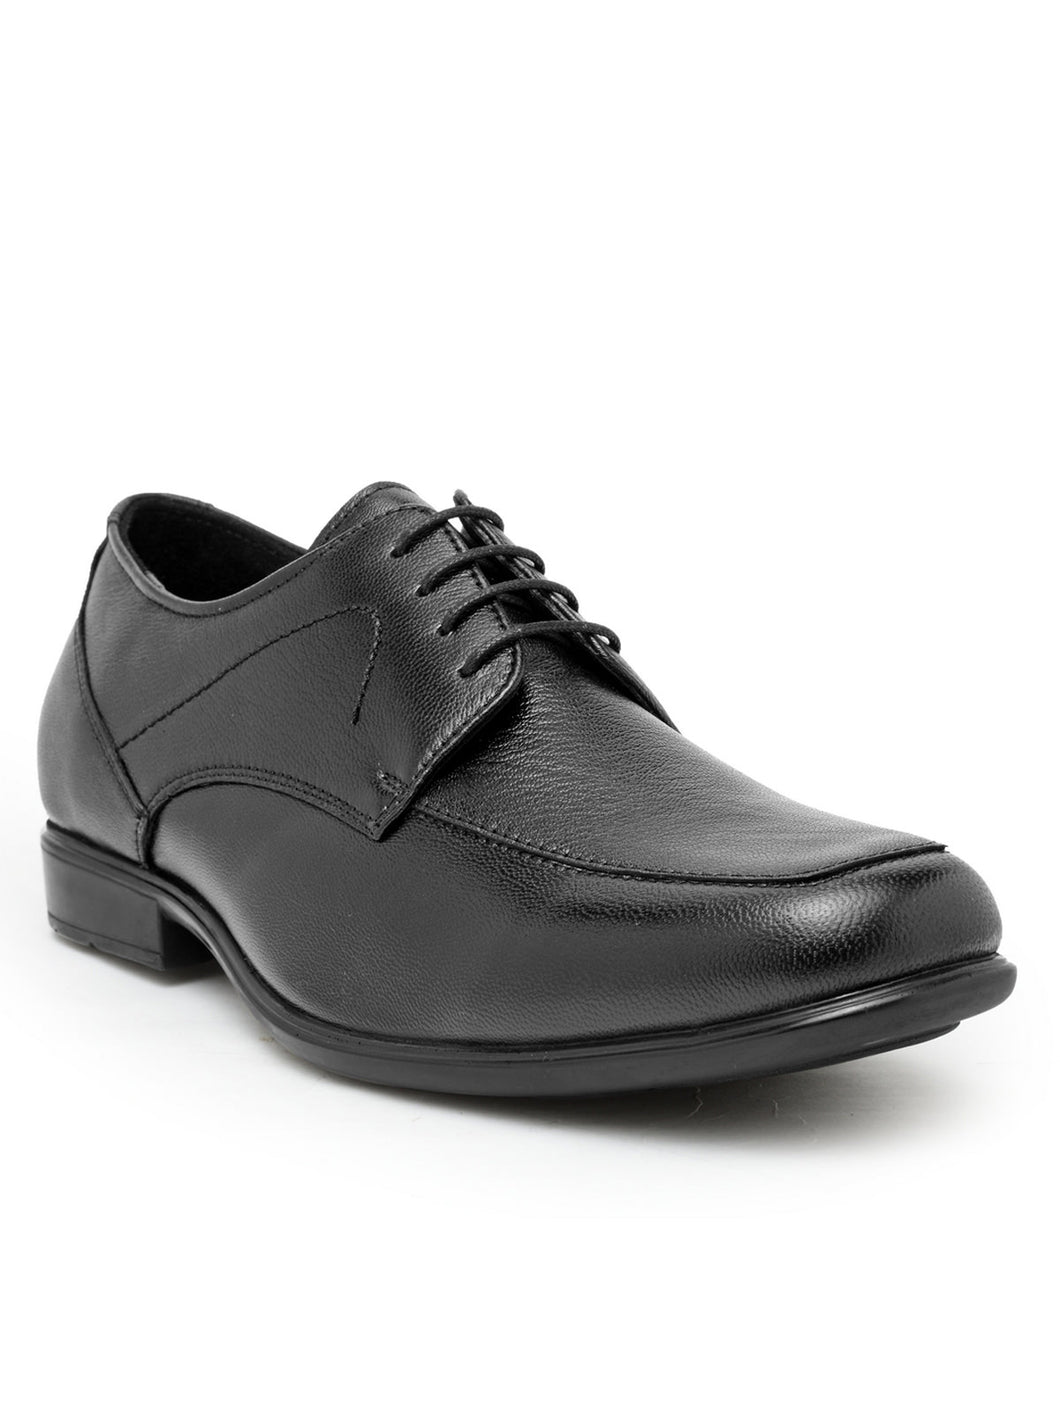 Teakwood Leather Black Formal Shoes